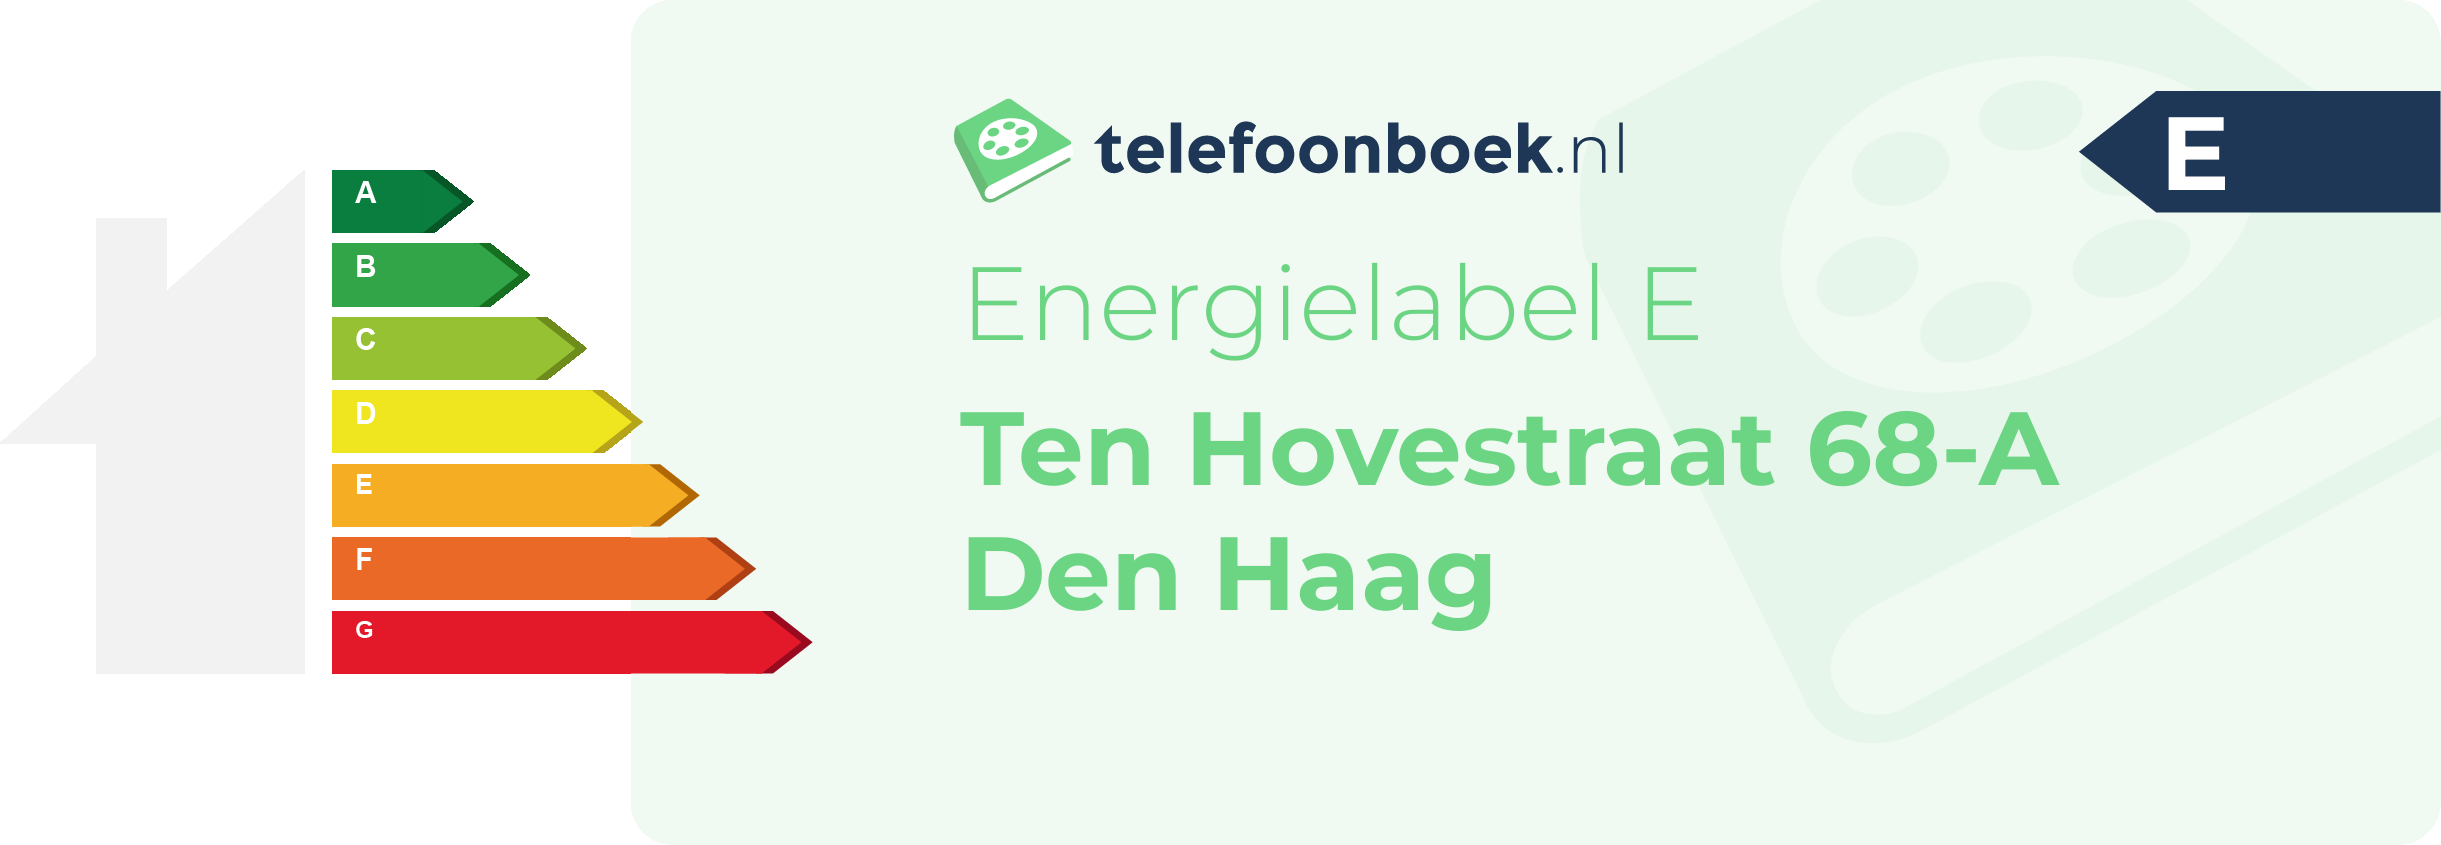 Energielabel Ten Hovestraat 68-A Den Haag